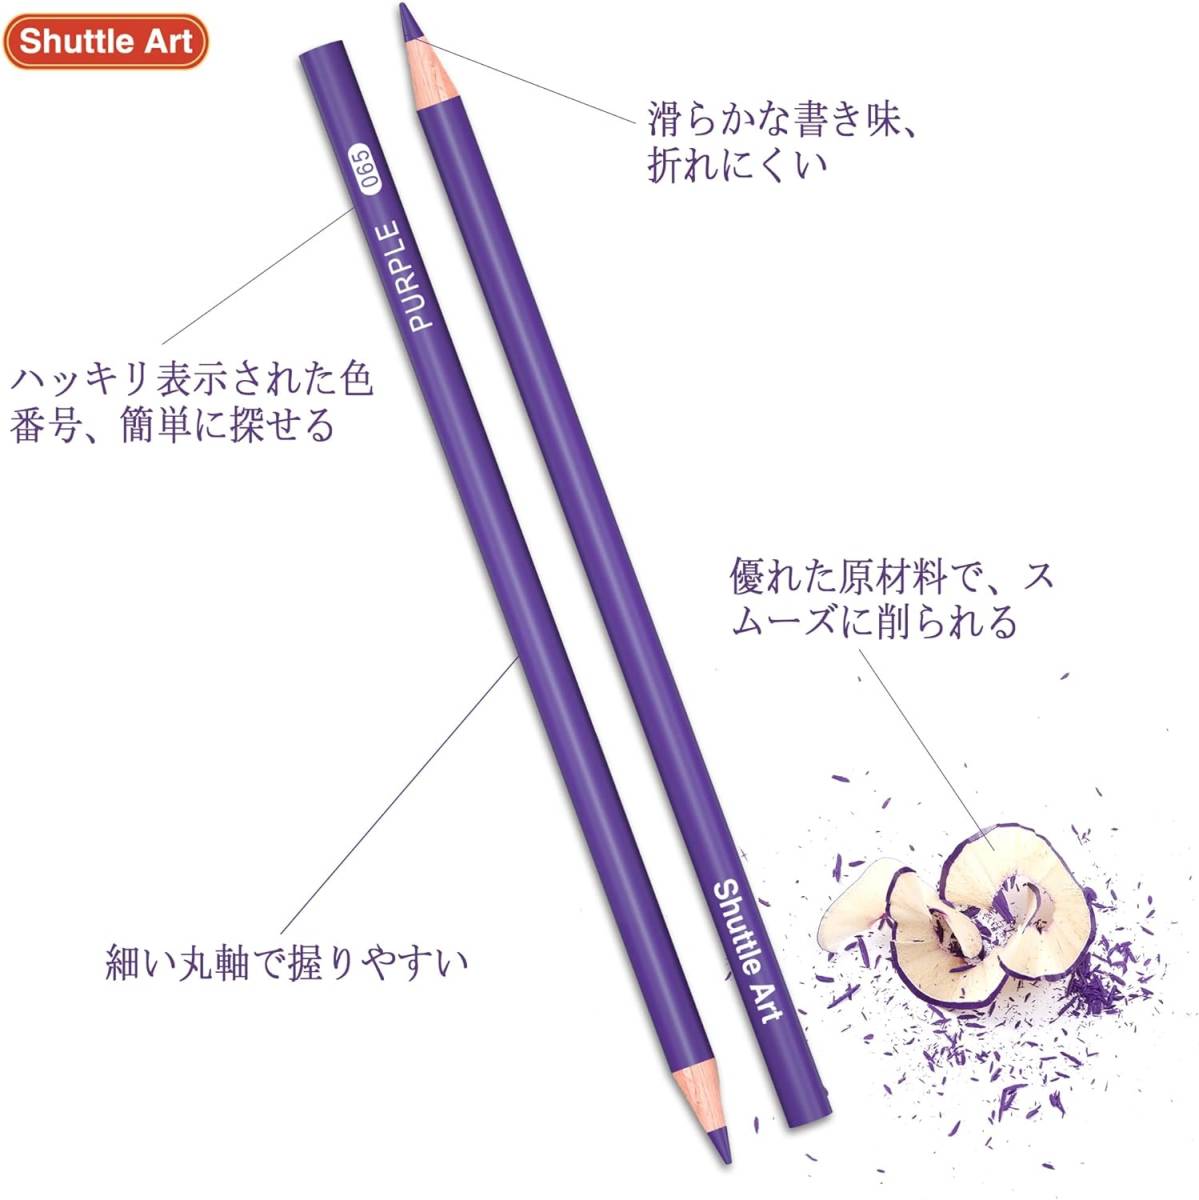 Shuttle Art 色鉛筆 172色 油性色鉛筆 カラーペンセット 大人の塗り絵 メタリック色 イラスト デザイン デッサン _画像4